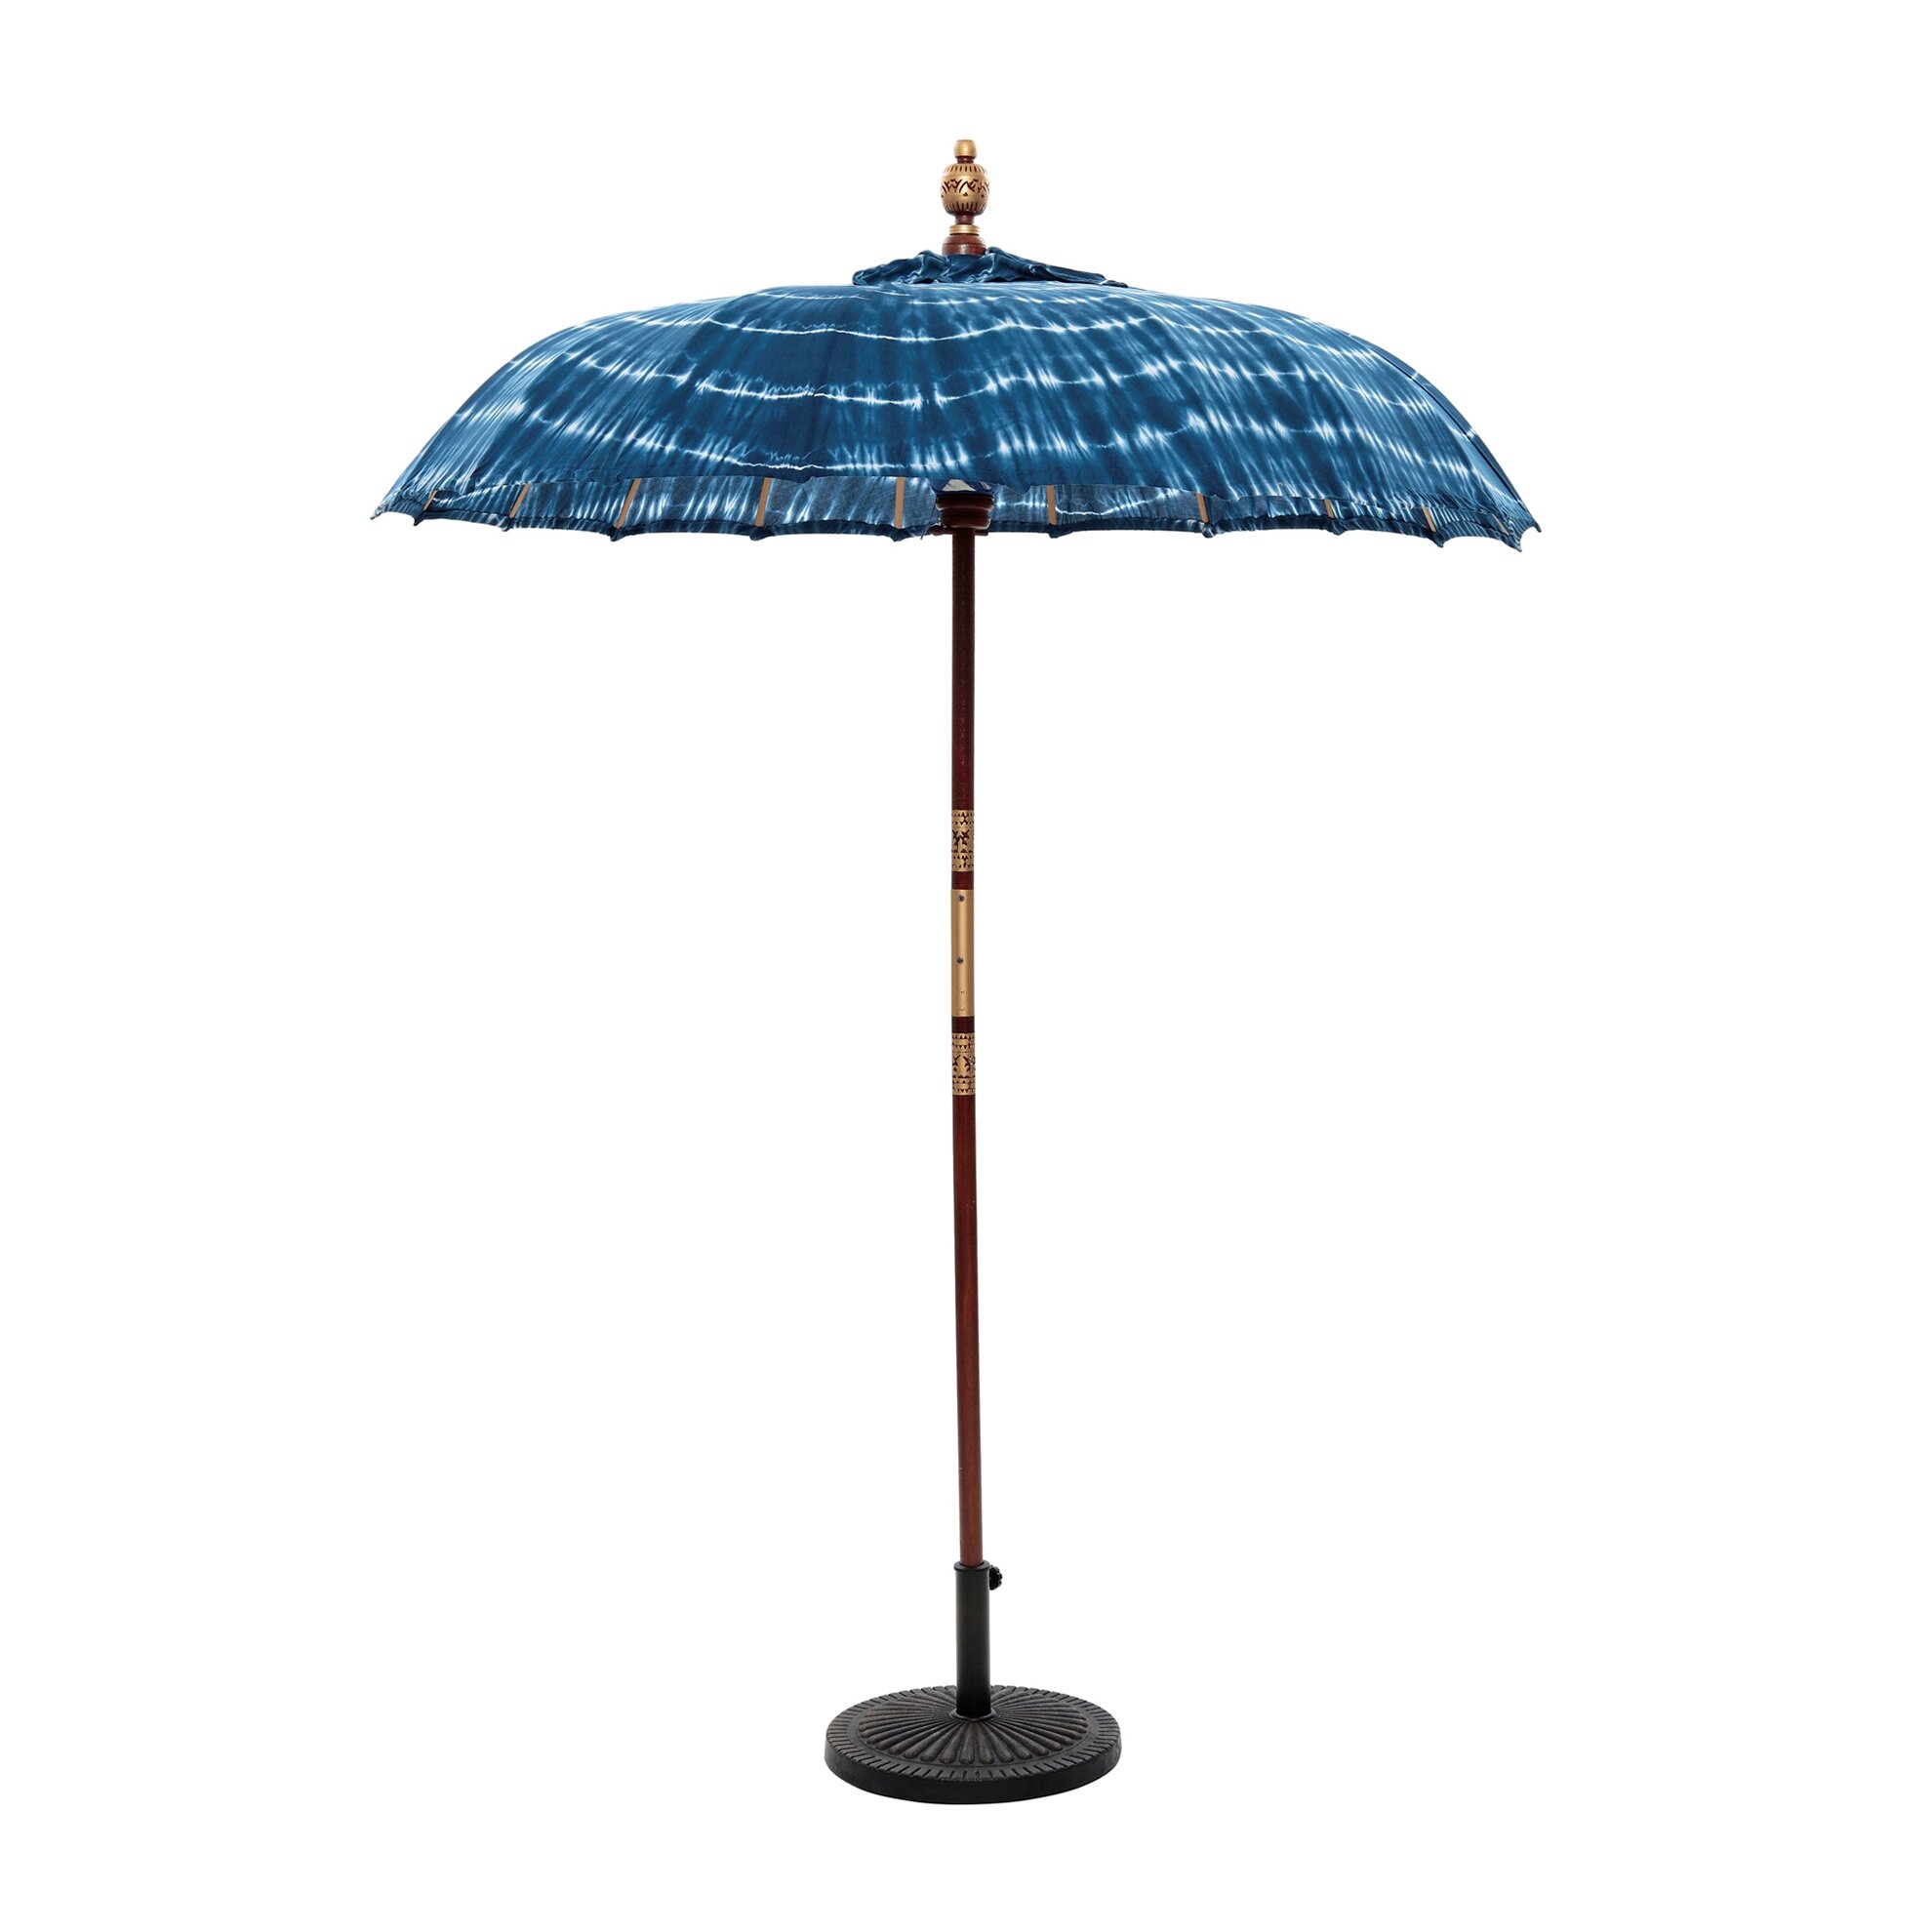 Büyük Şemsiye (180x260cm)